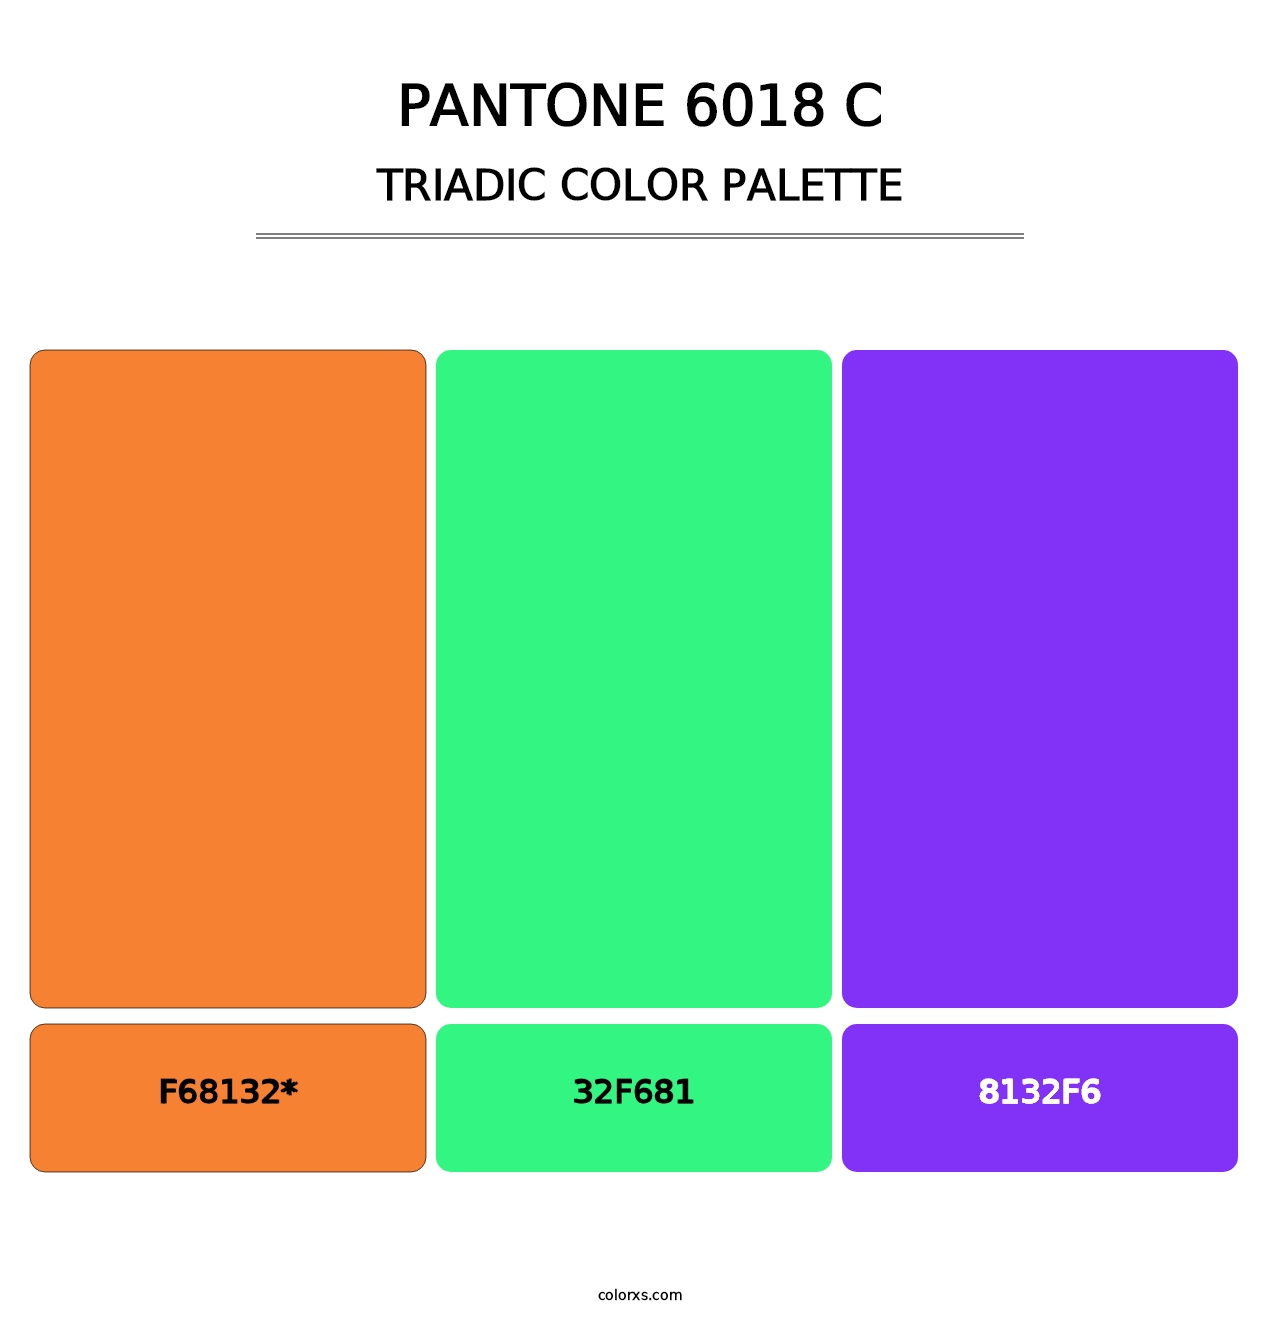 PANTONE 6018 C - Triadic Color Palette